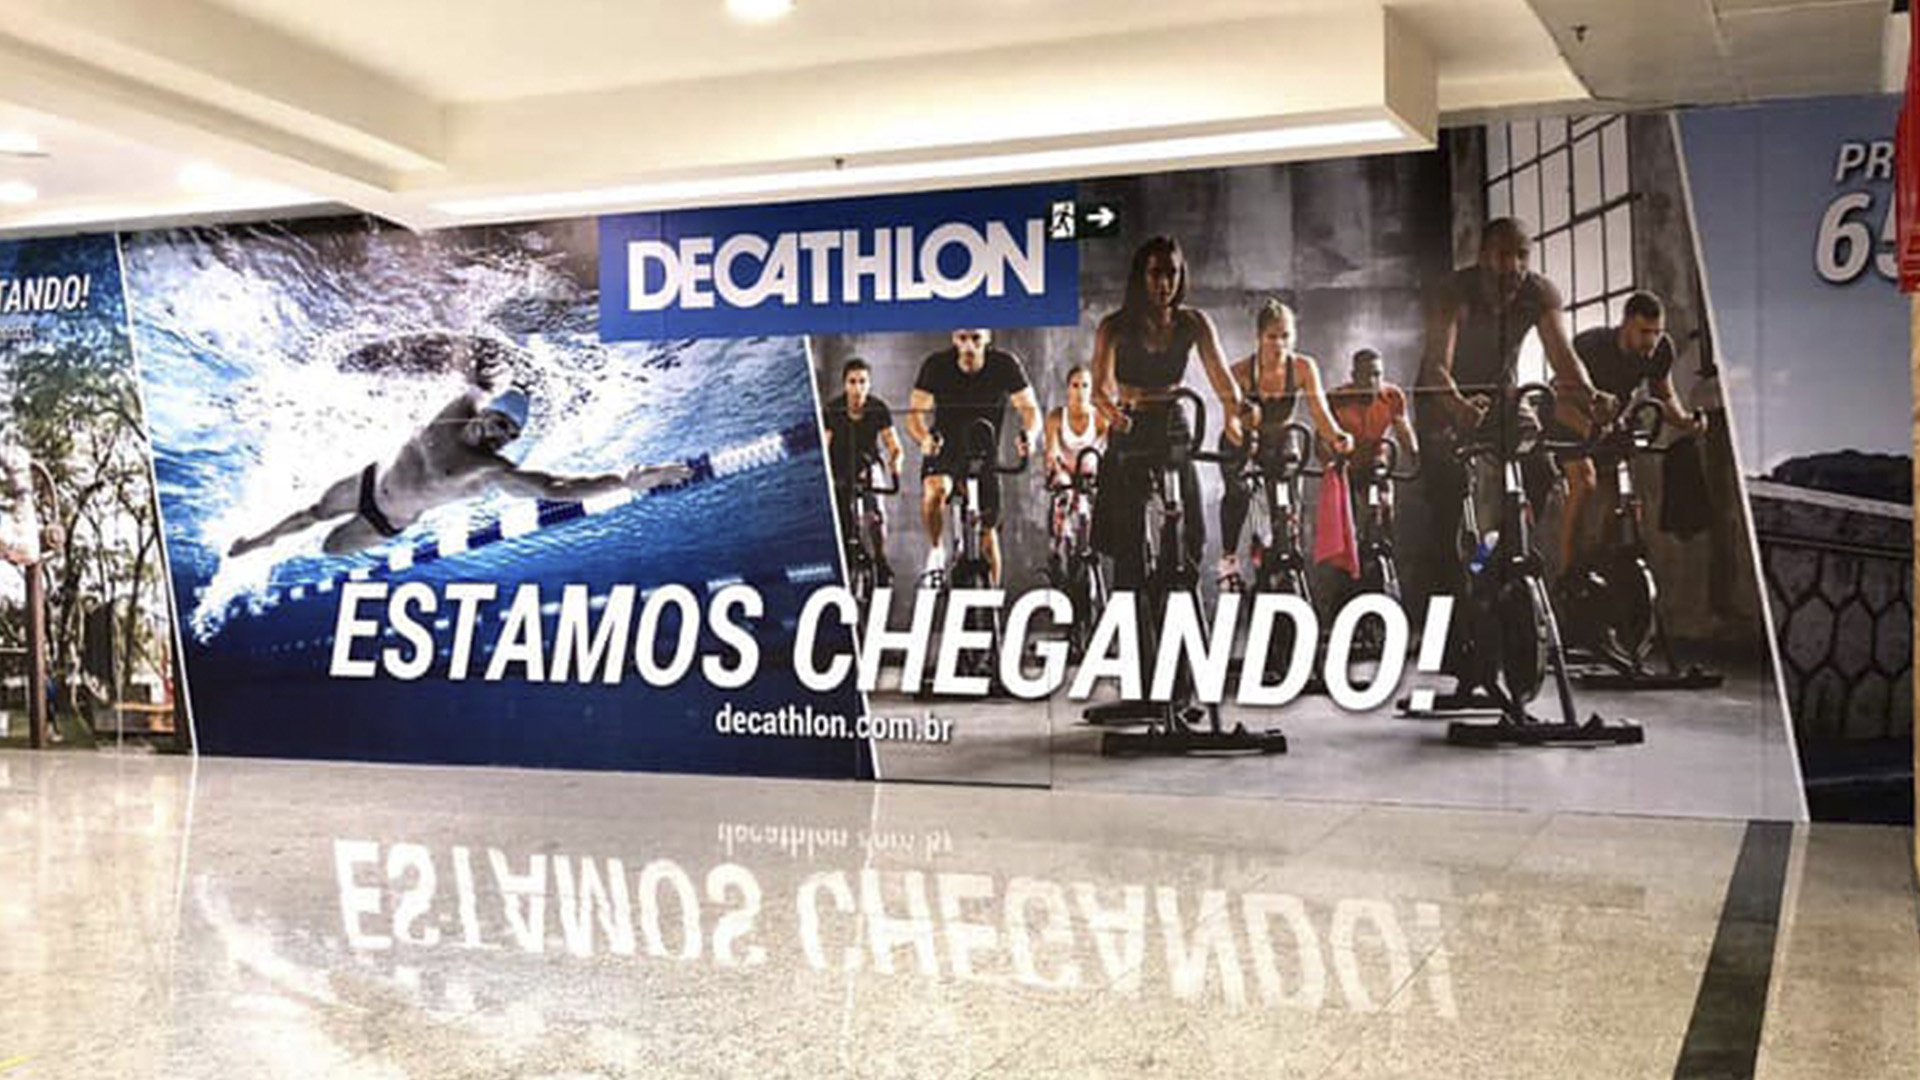 Decathlon chega a Salvador com primeira loja física - ABRASCE